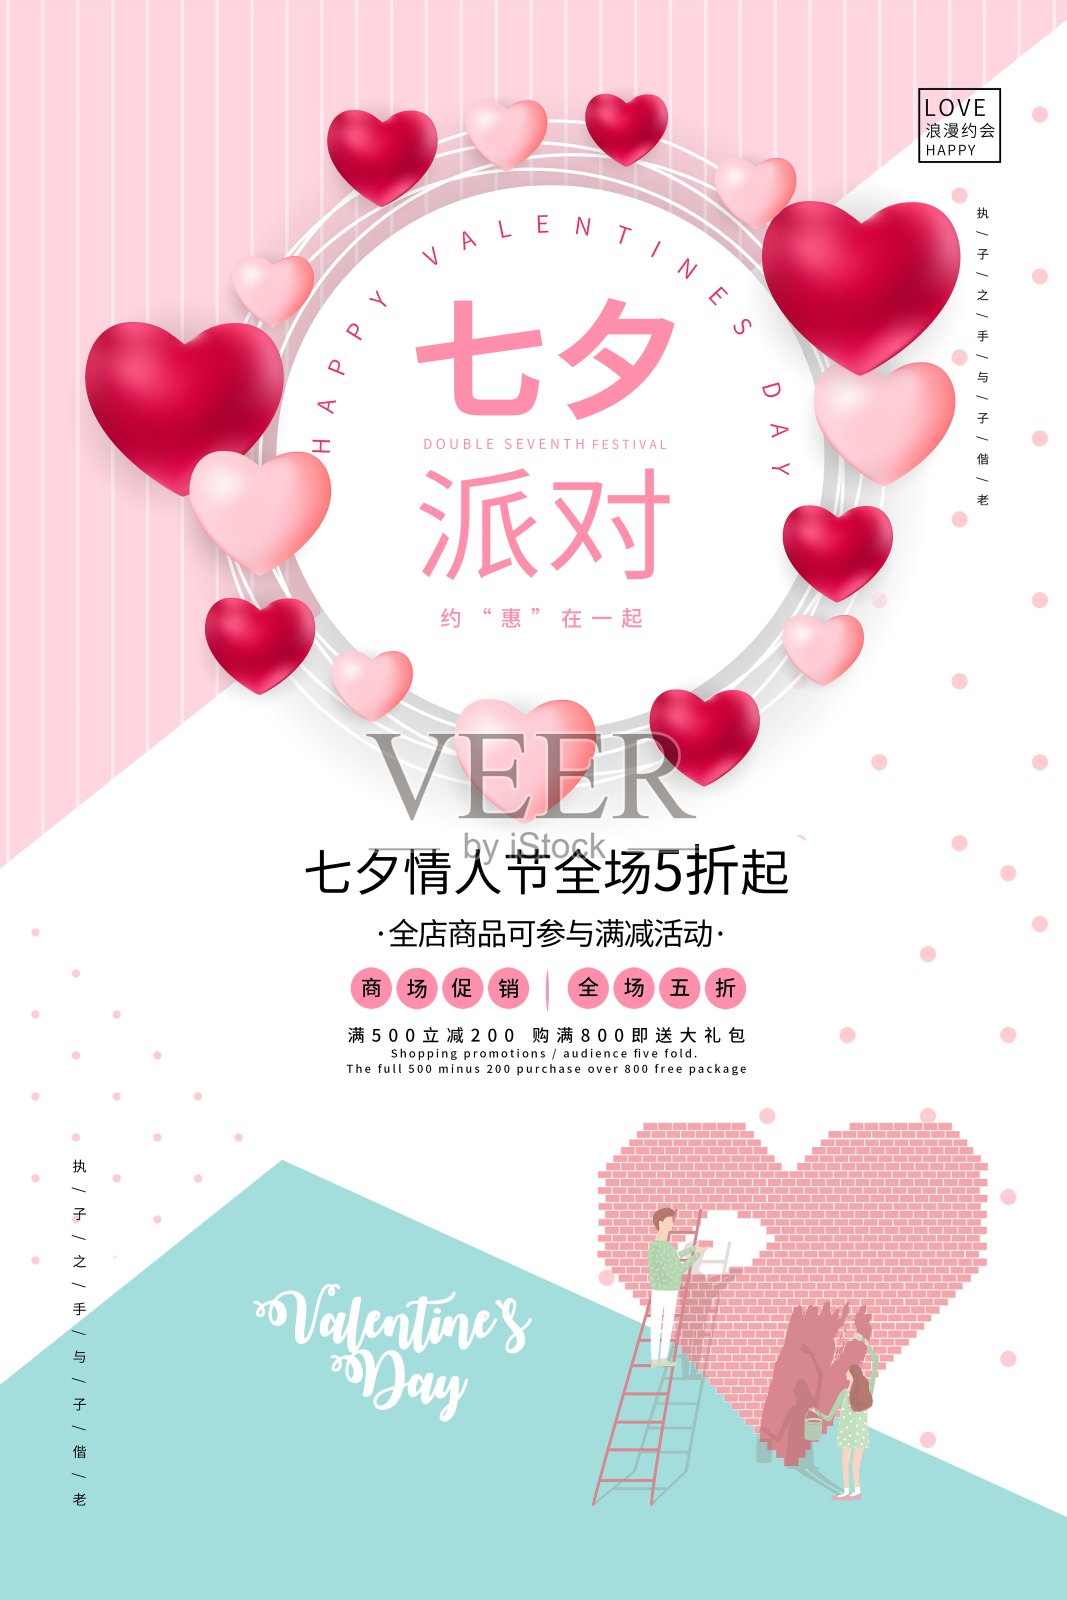 简约七夕派对情人节节日促销海报设计模板素材